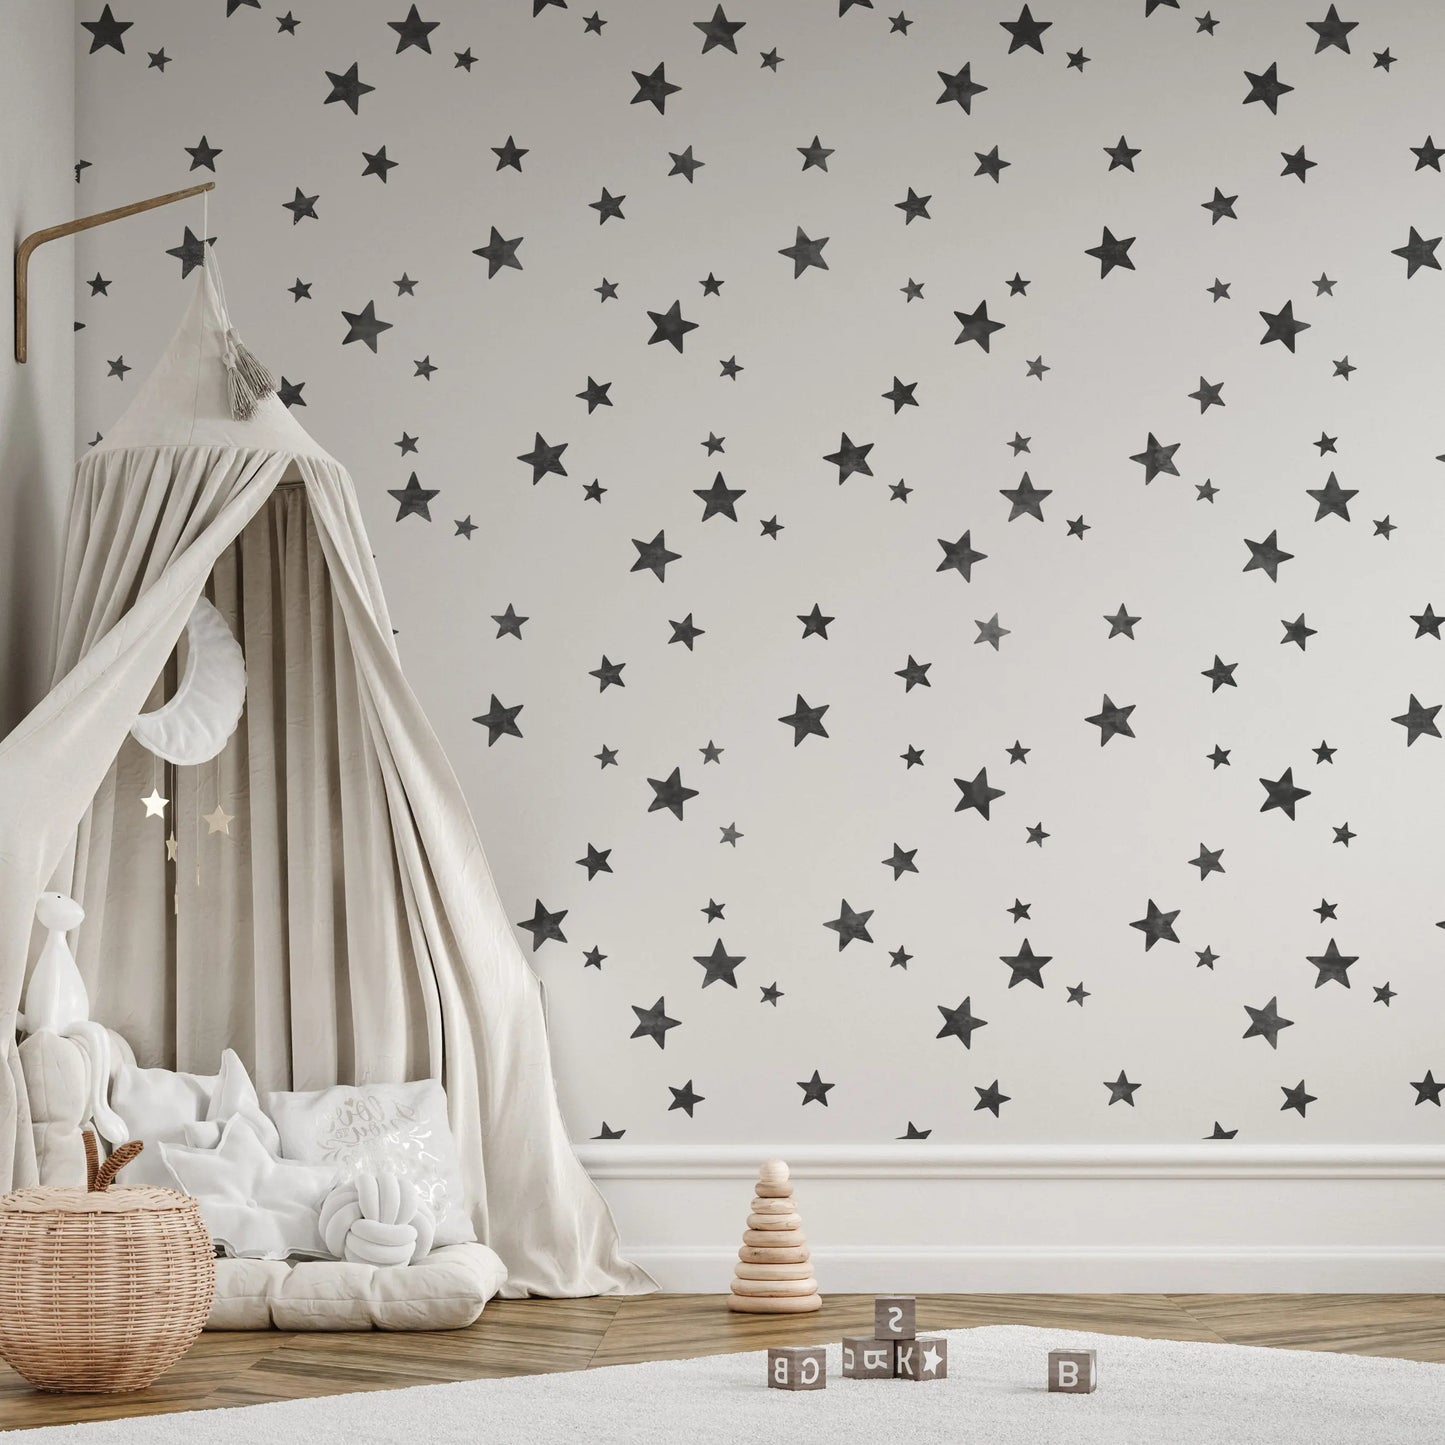 Stencil 5-POINT STAR CLUSTER Wall & Furniture Stencil Dizzy Duck Designs